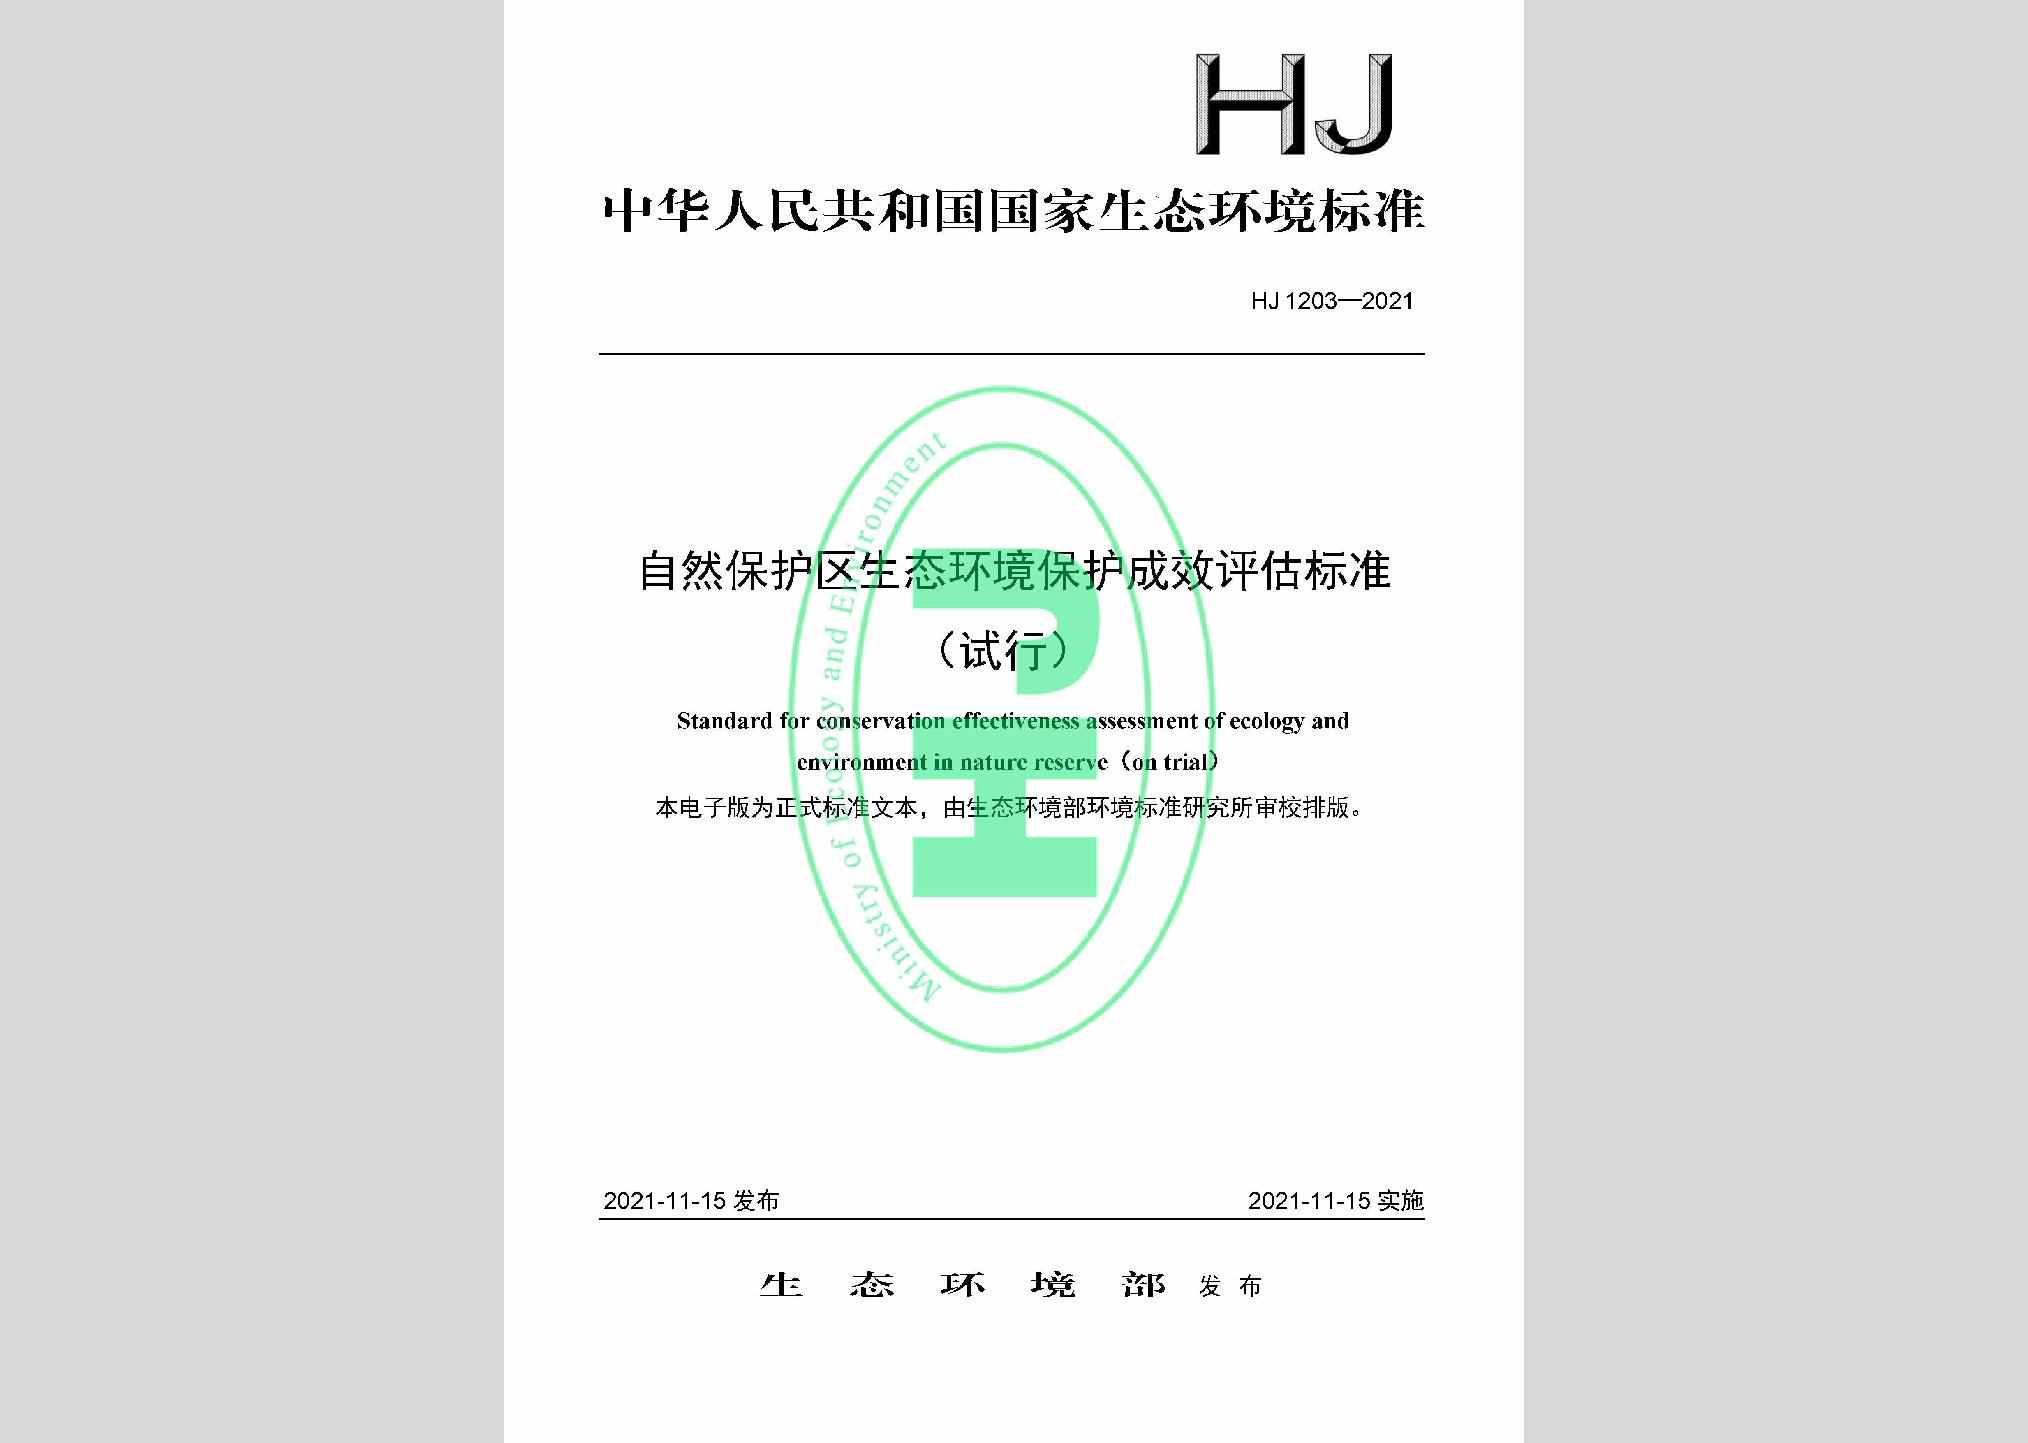 HJ1203-2021：自然保护区生态环境保护成效评估标准（试行）